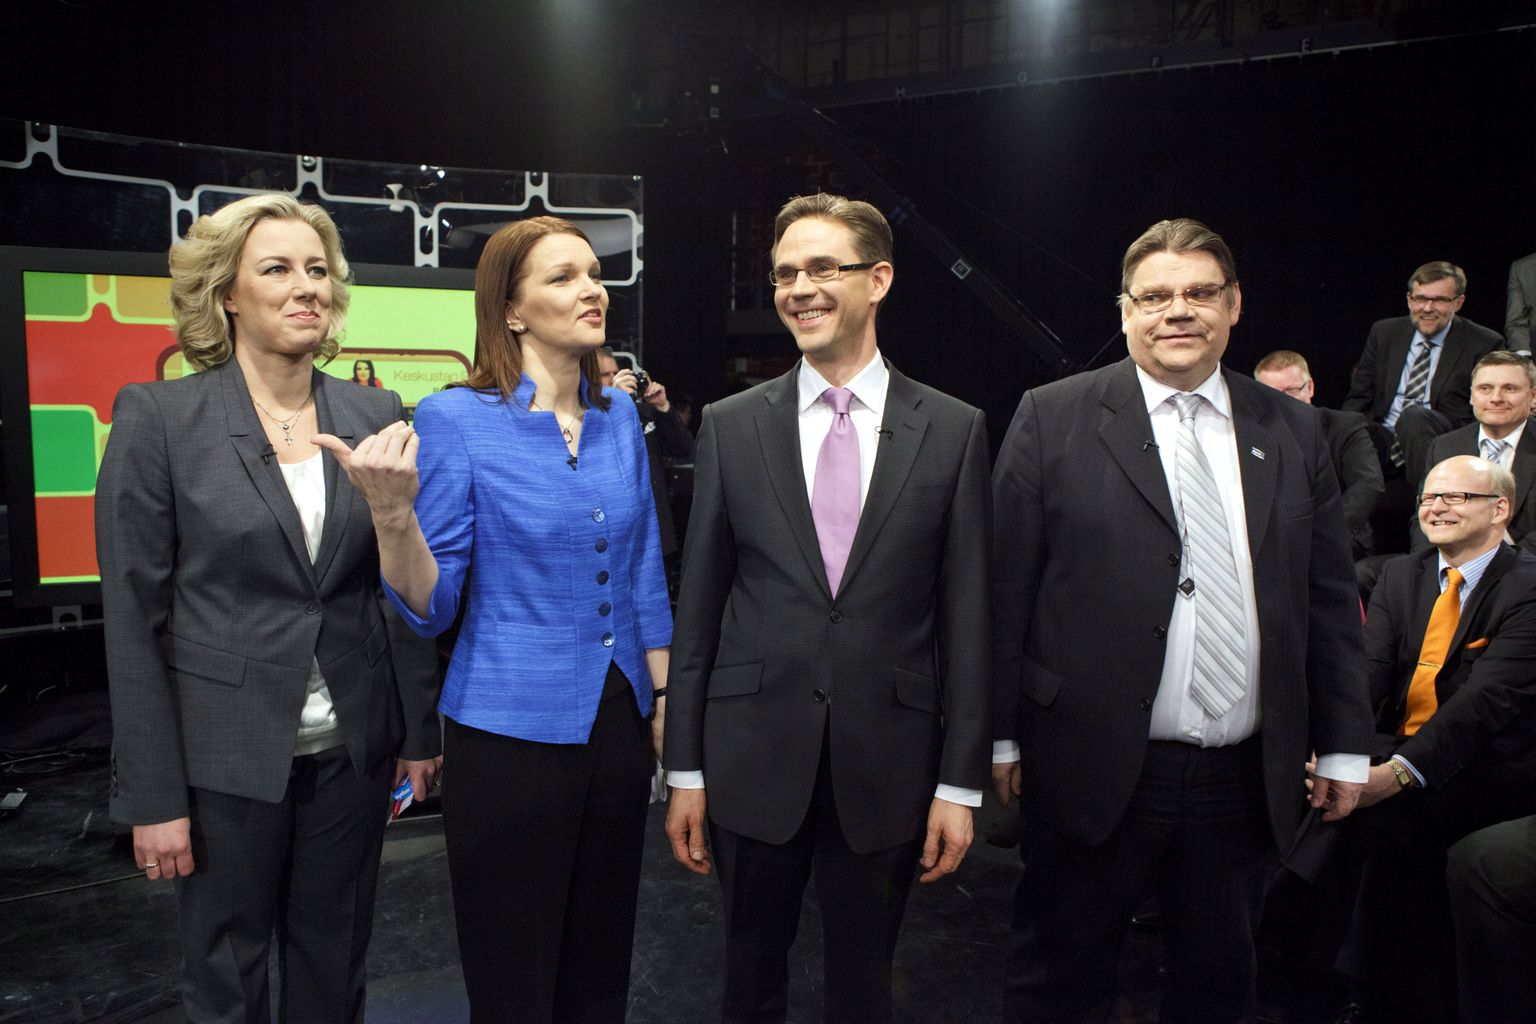 Sotsiaaldemokraatide liider Jutta Urpilainen (vasakult paremale), Keskusta liider Mari Kiviniemi, Kokoomuse juht Jyrki Katainen ja Põlissoomlaste liider Timo Soini.